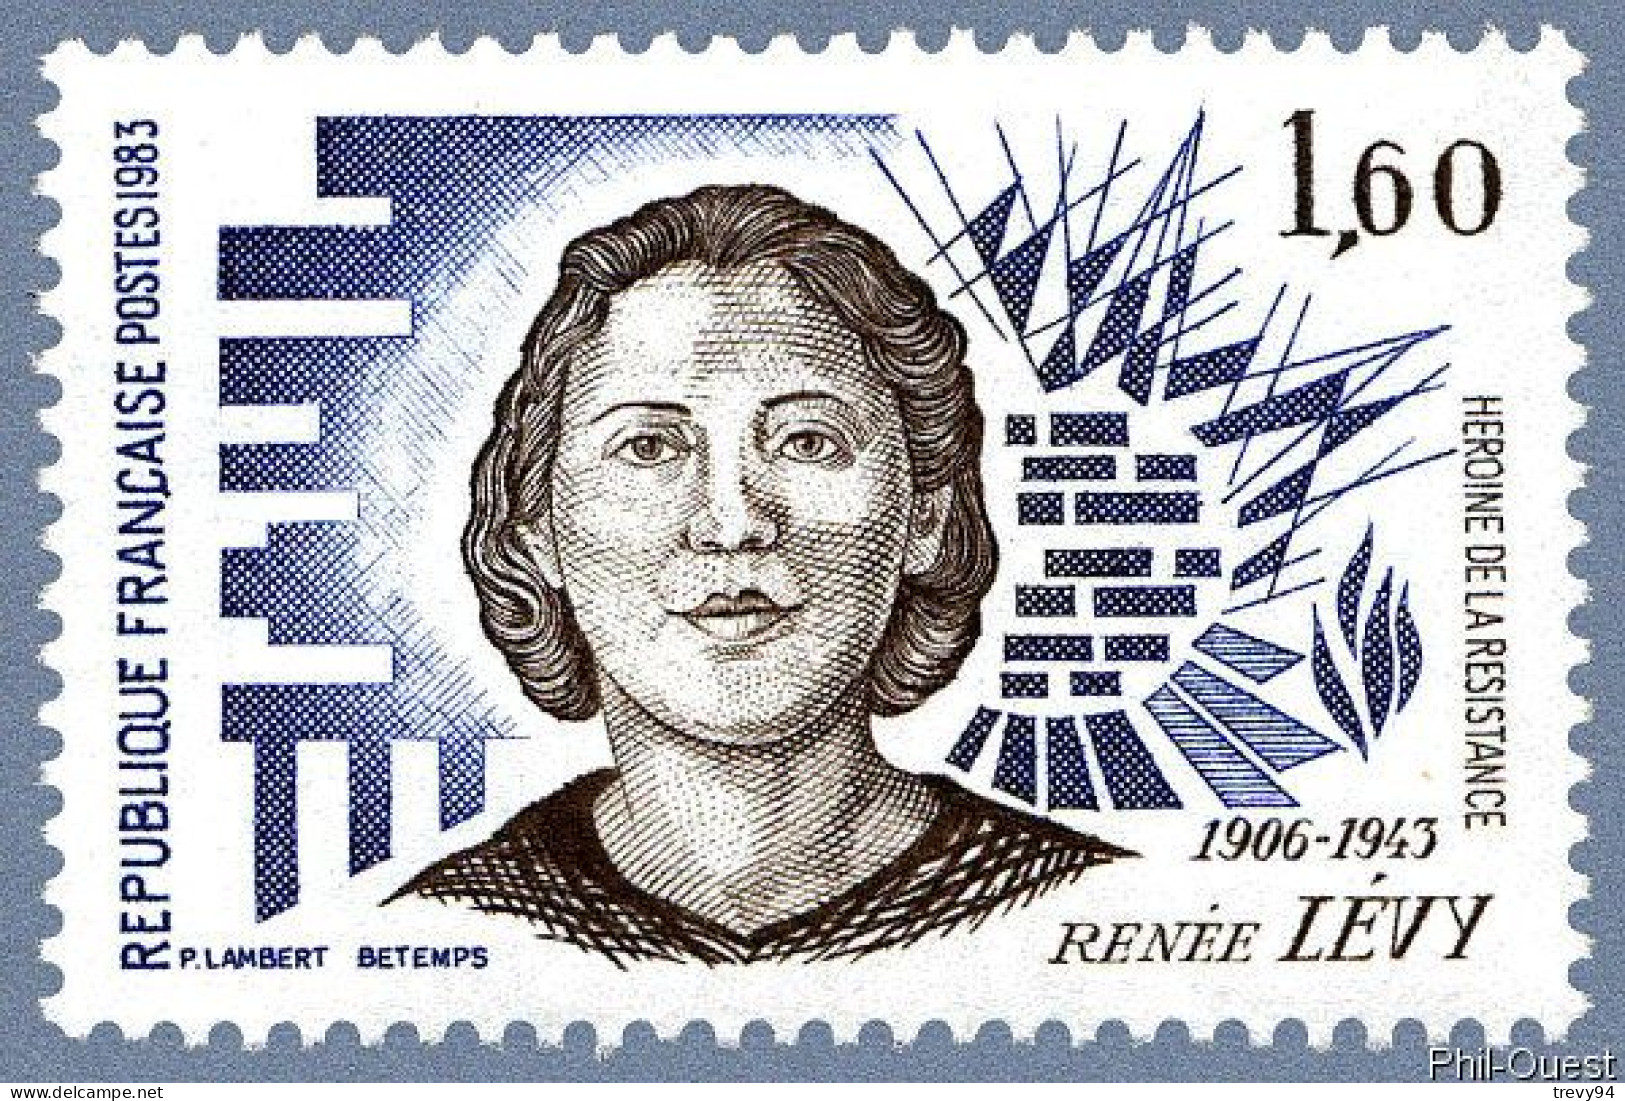 Timbre De 1983 - Héroïnes De La Résistance Renée Levy 1906-1943 - Yvert & Tellier N° 2293 - Ungebraucht